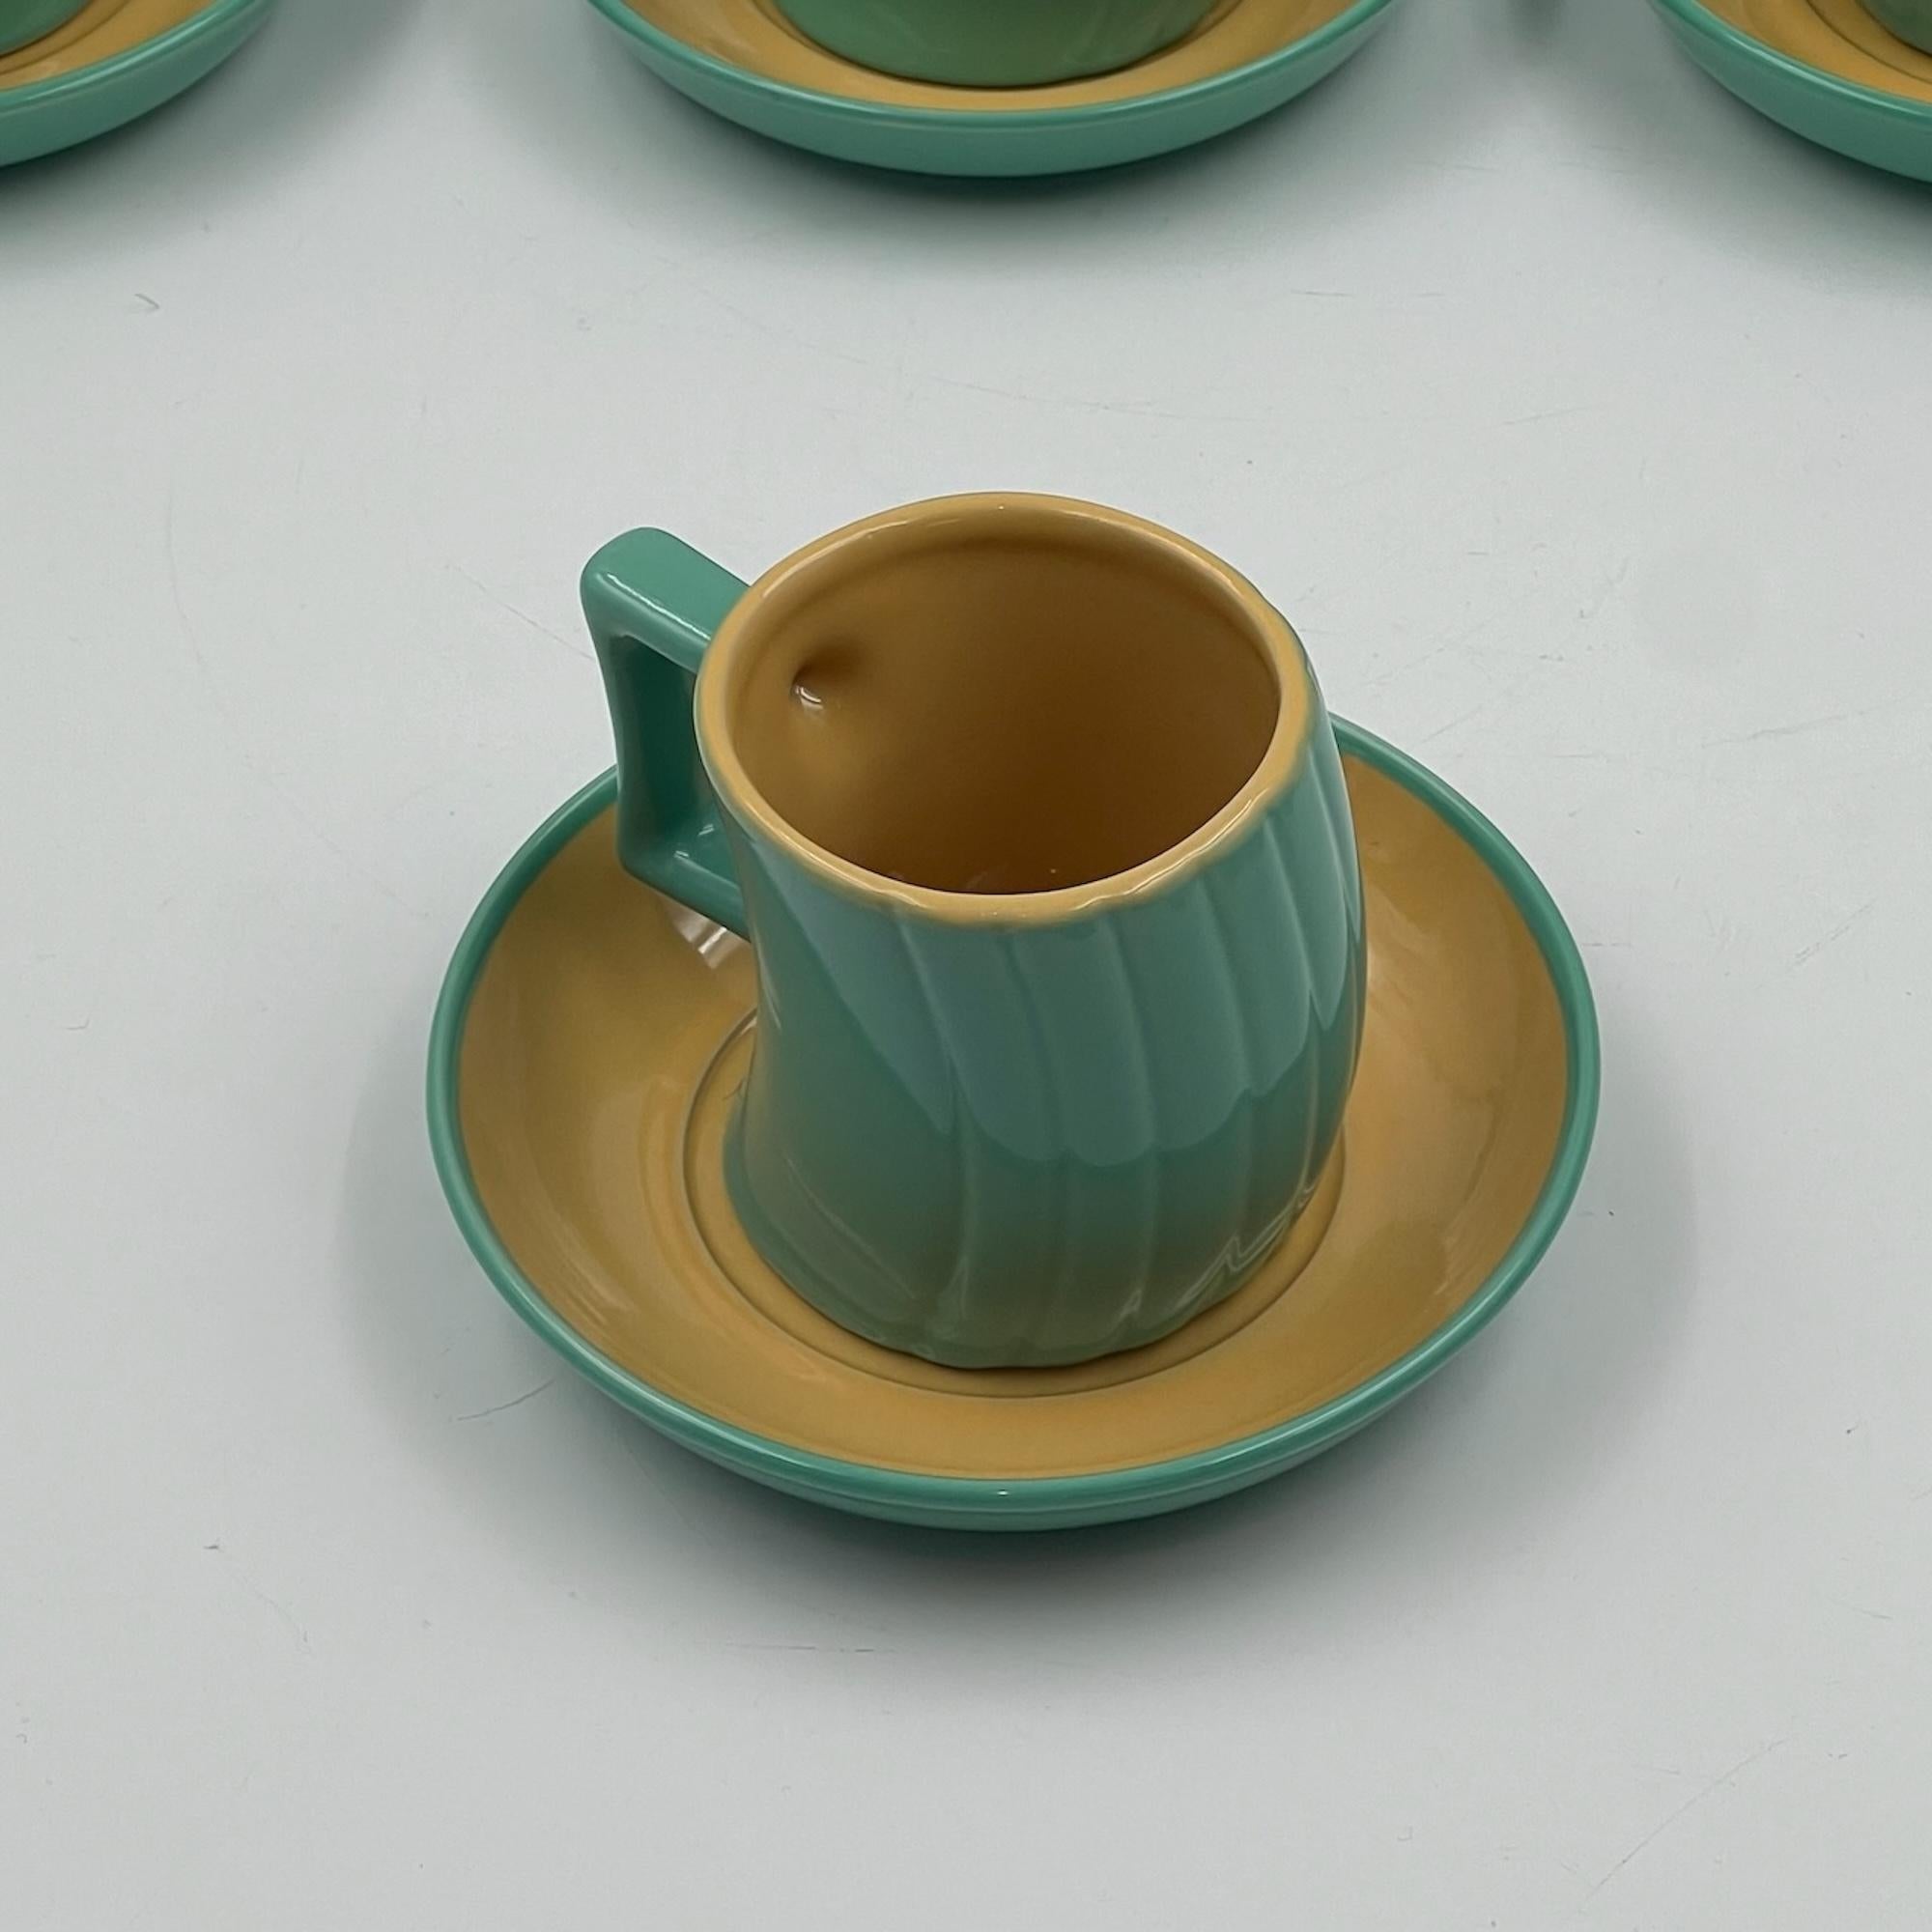 Vintage Memphis Naj Oleari Ceramic Tea Set by Massimo Iosa Ghini - 1980s In Good Condition For Sale In San Benedetto Del Tronto, IT